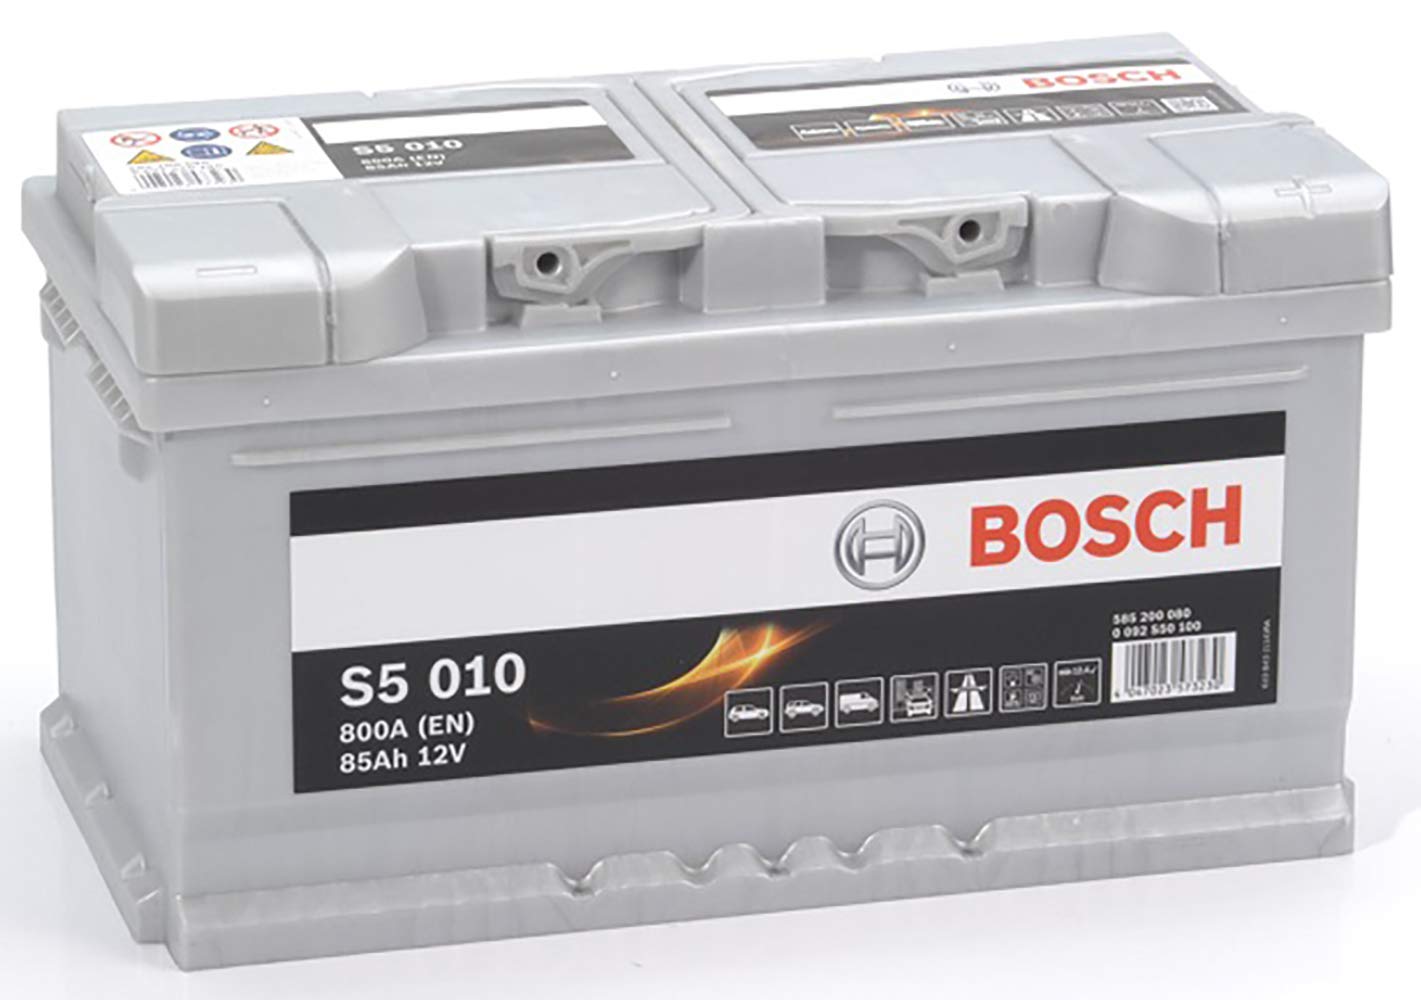 Bosch S5010 - Autobatterie - 85A/h - 800A - Blei-Säure-Technologie - für Fahrzeuge ohne Start-Stopp-System